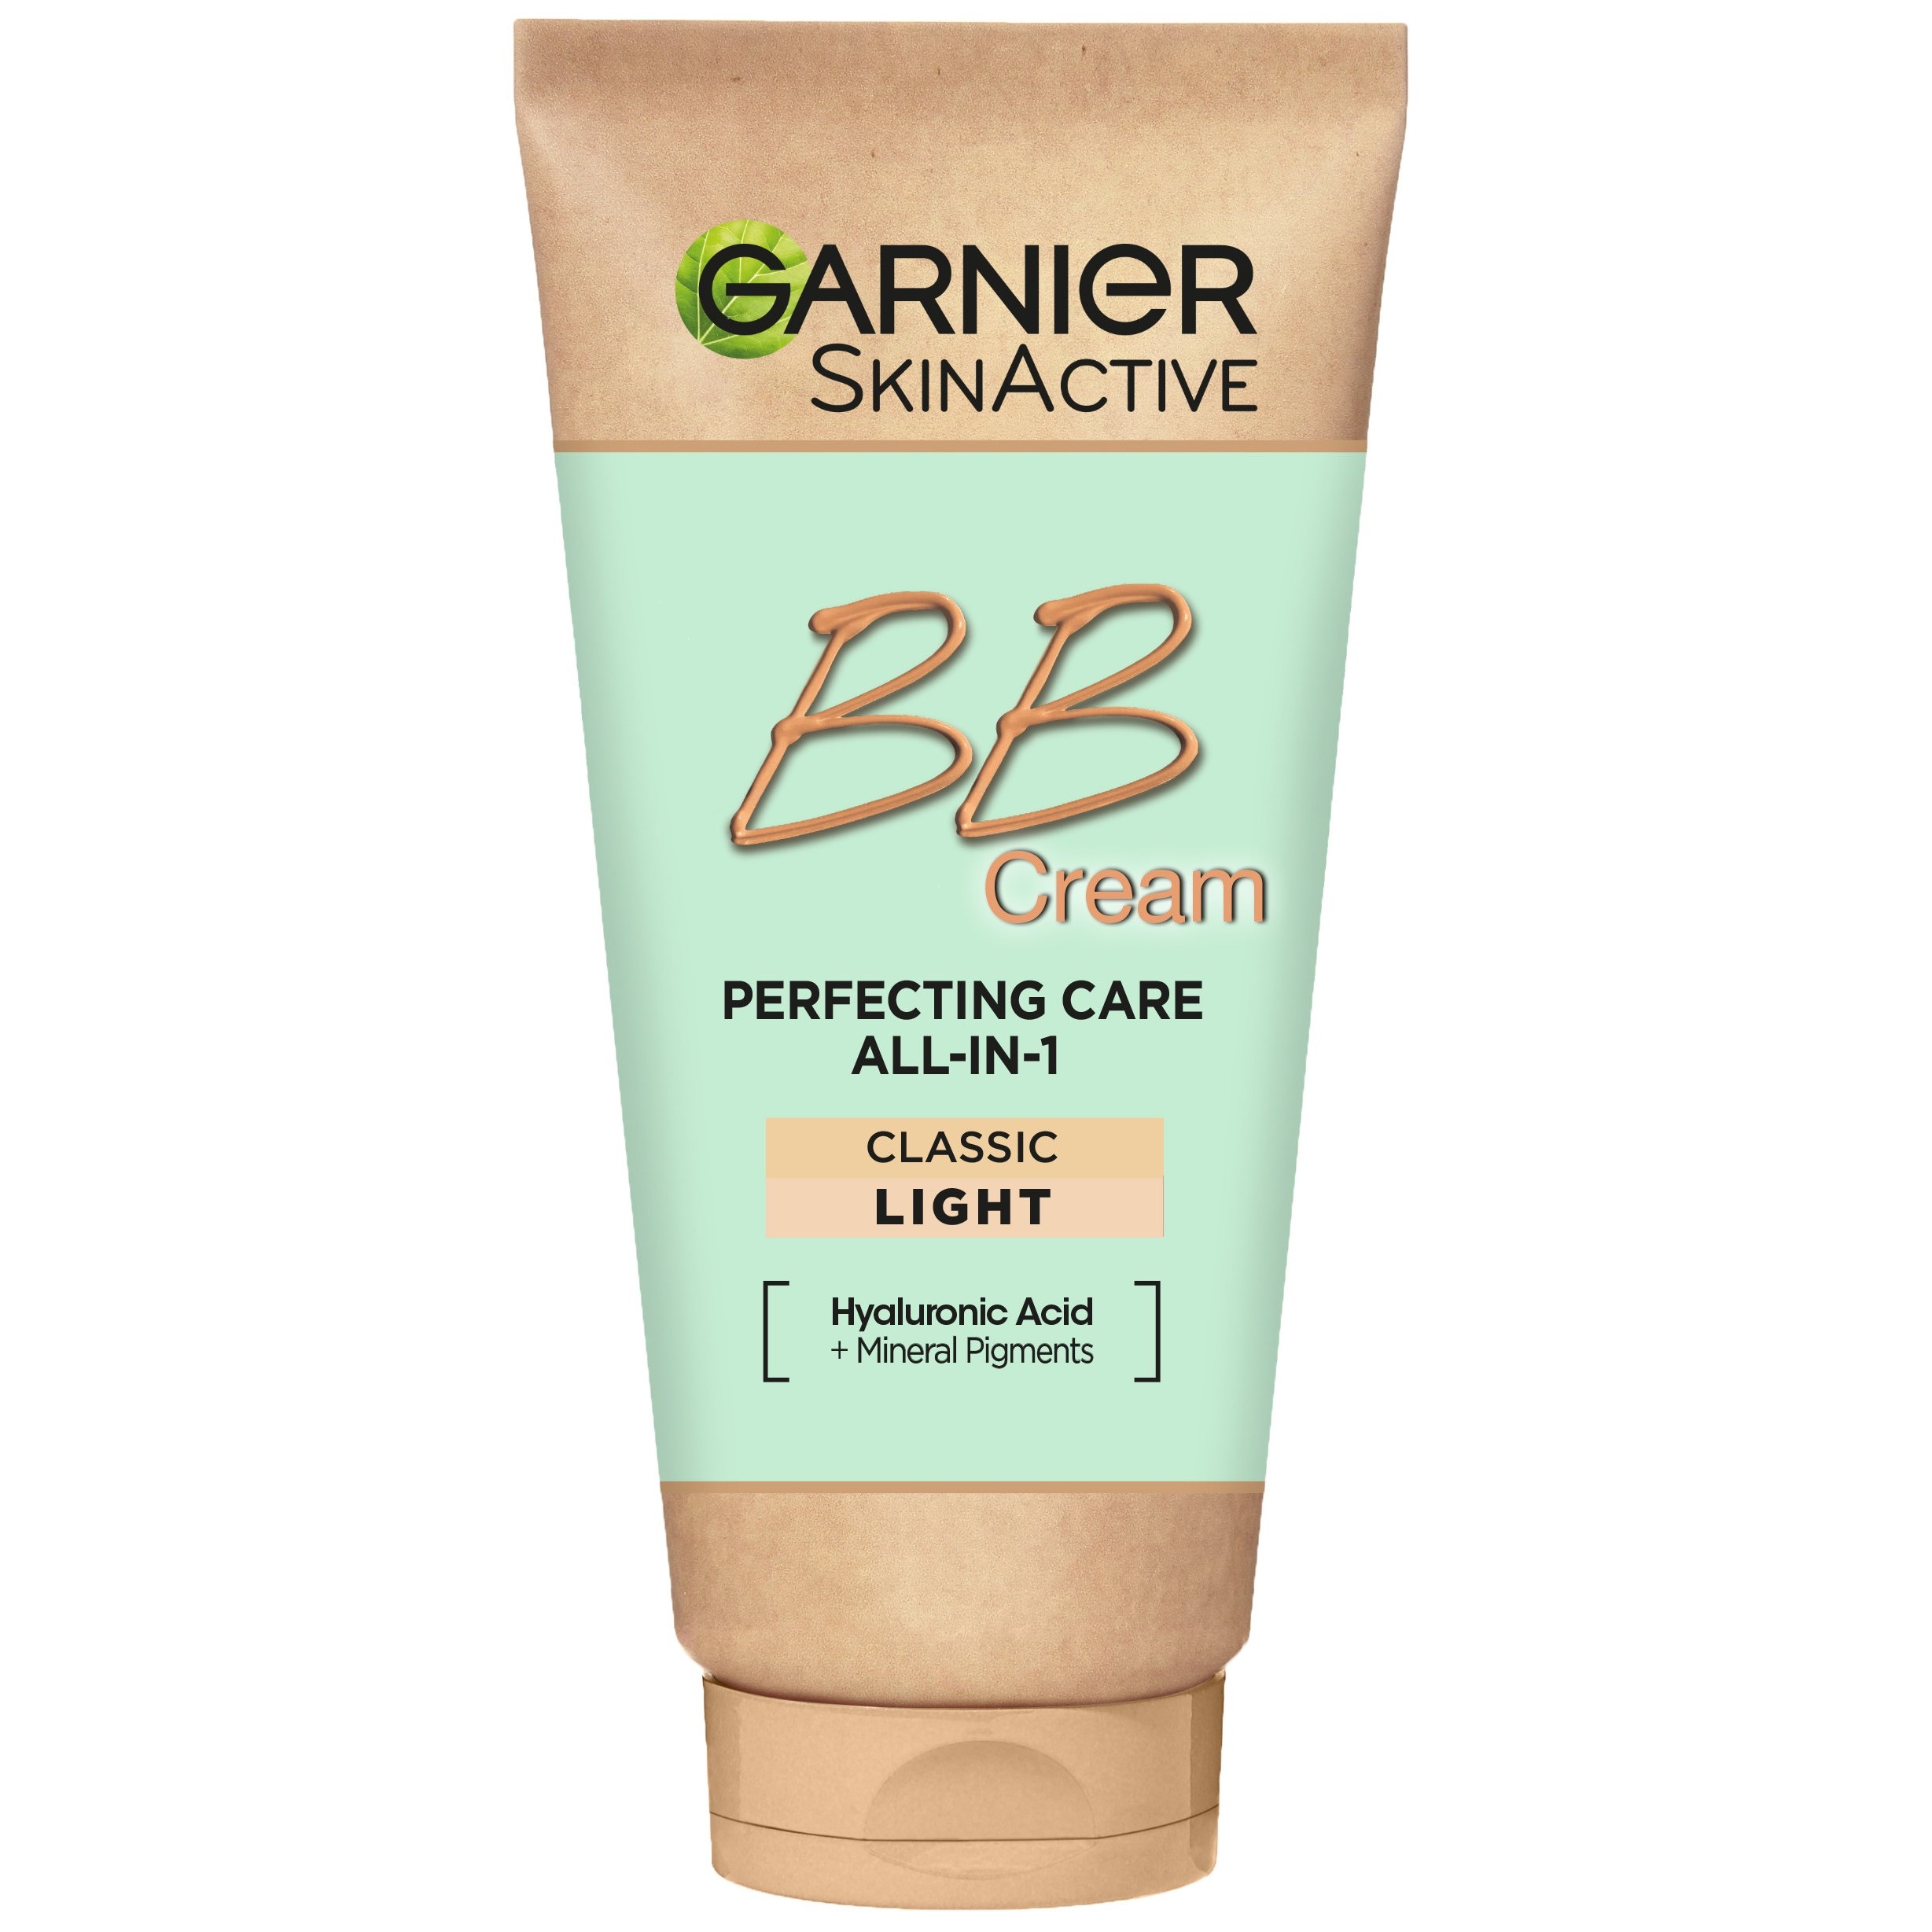 Bilde av Garnier Skinactive Bb Cream Perfecting Care All-in-1 Light